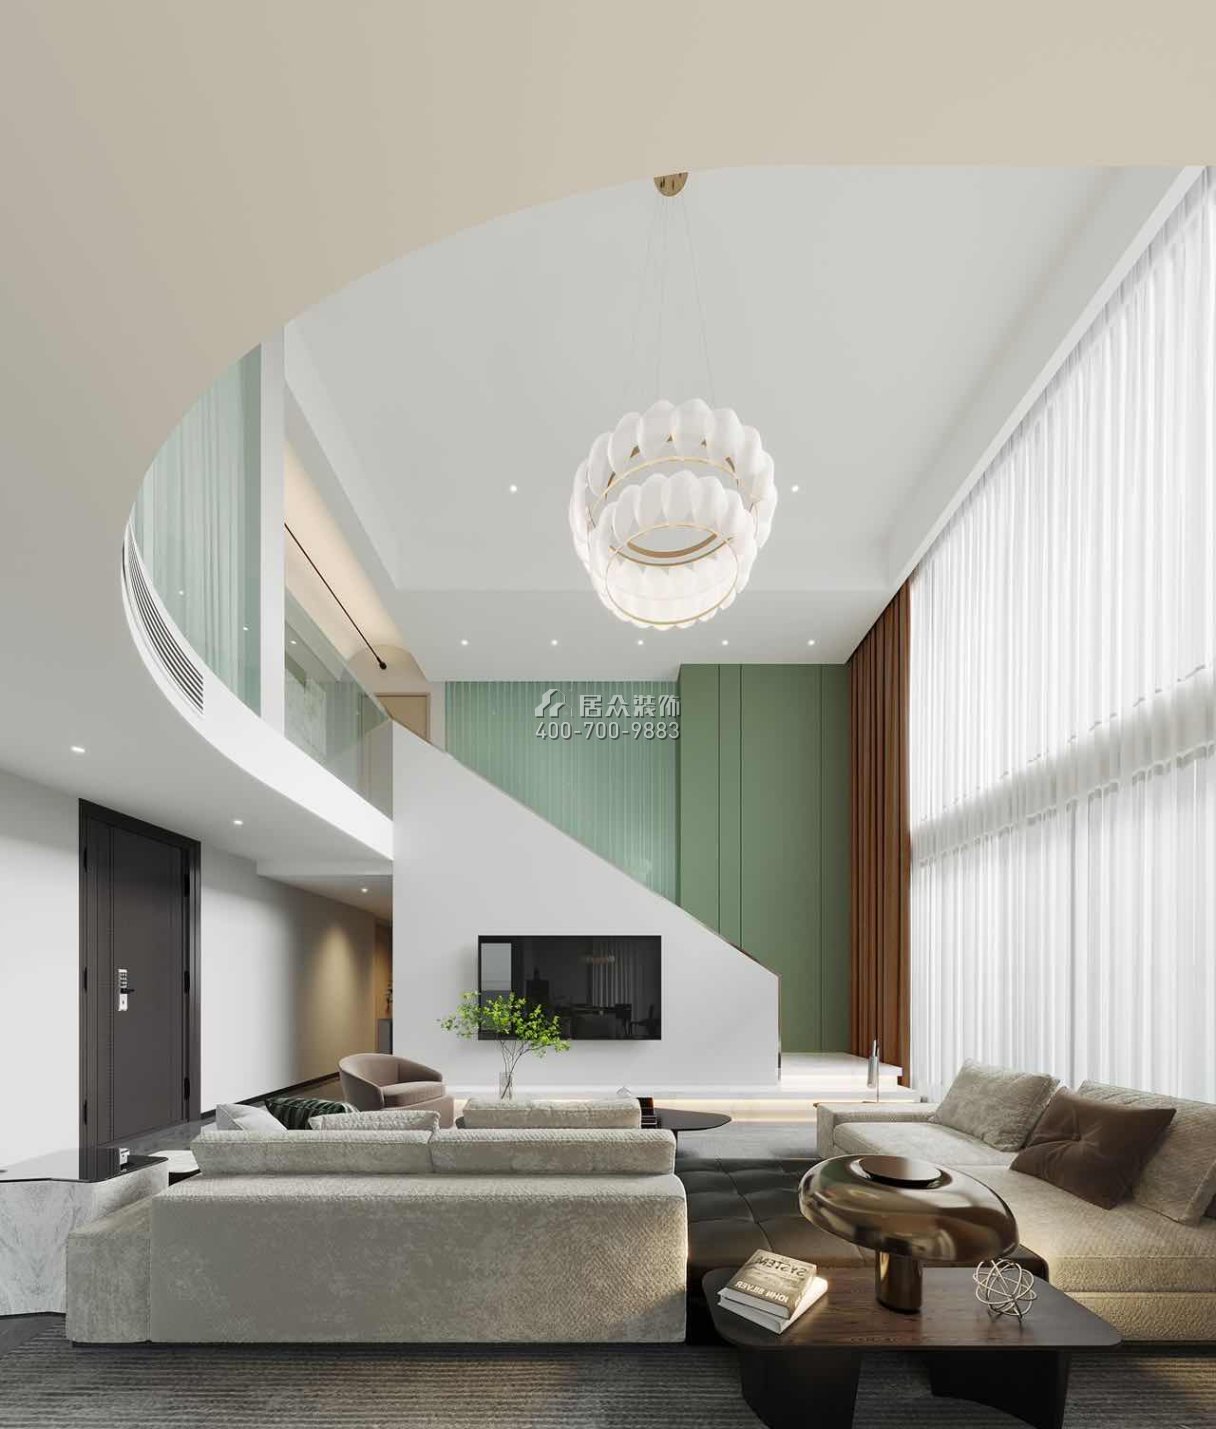 華發世紀城240平方米現代簡約風格復式戶型客廳裝修效果圖